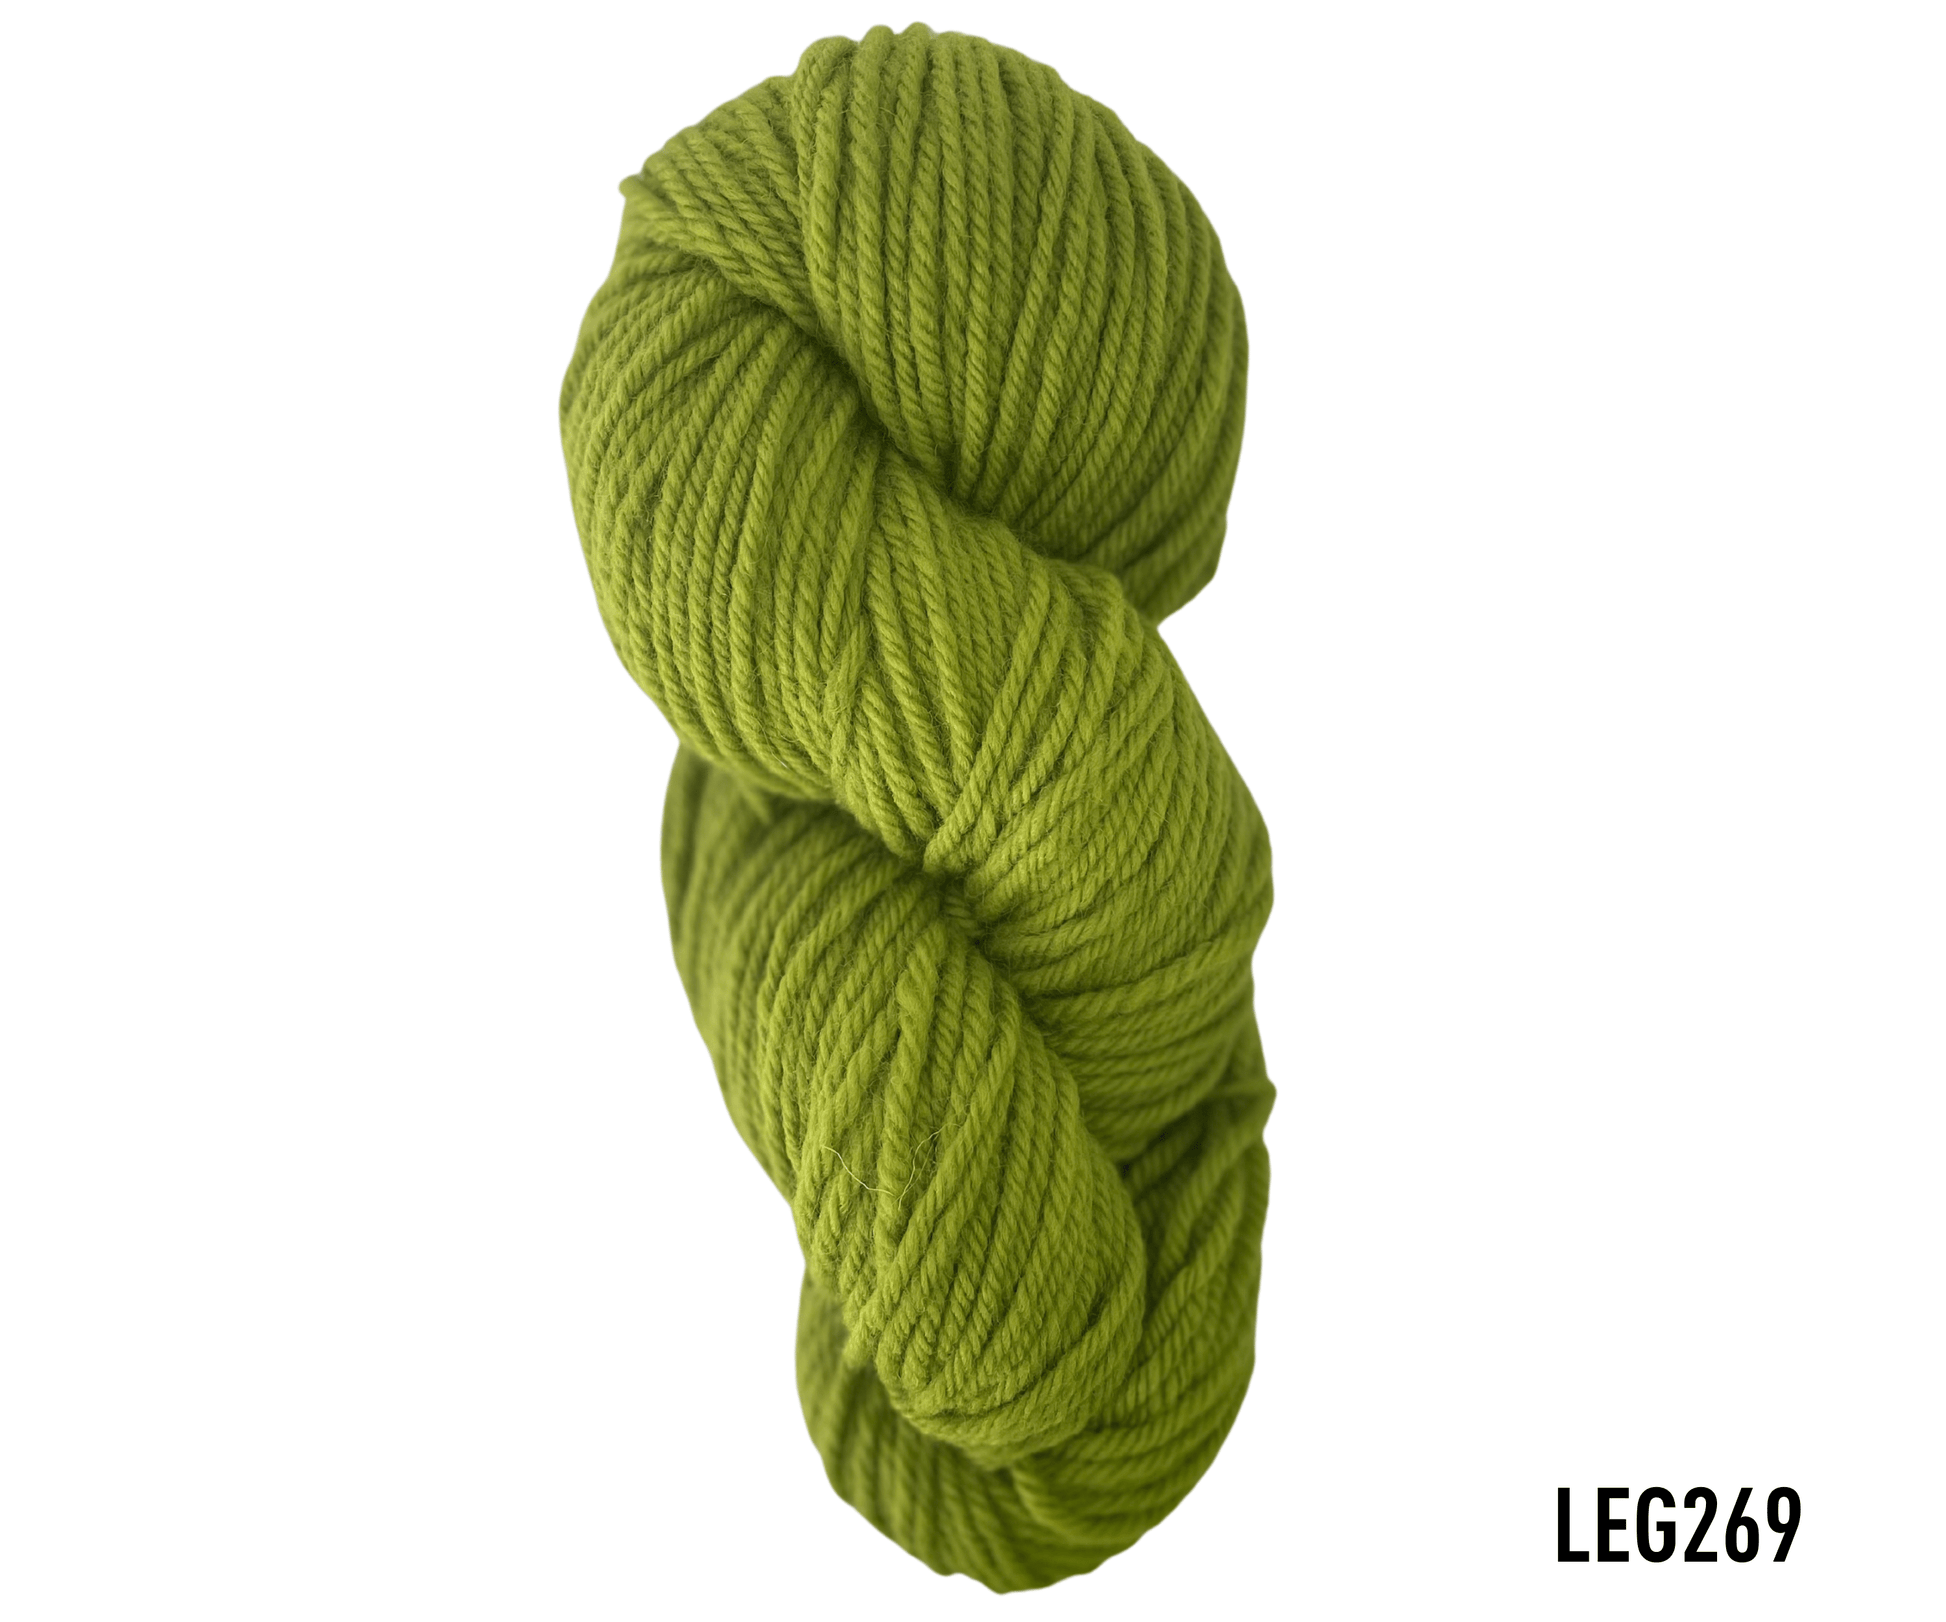 lanabel LANA NATURAL GRUESA LEG269 lana natural gruesa Verdes(lana natural gruesa)